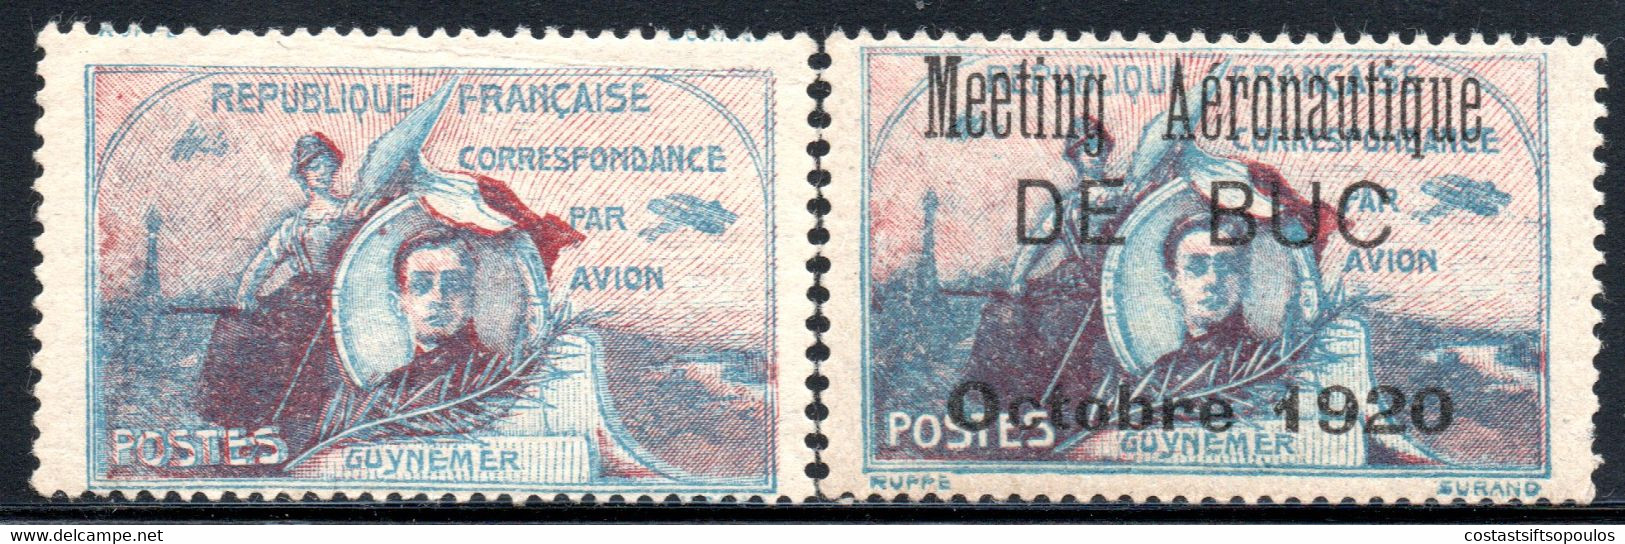 193.FRANCE.1920  GUYNEMER AND DE BUC AVIATION MEETING LABELS MNH - Luftfahrt